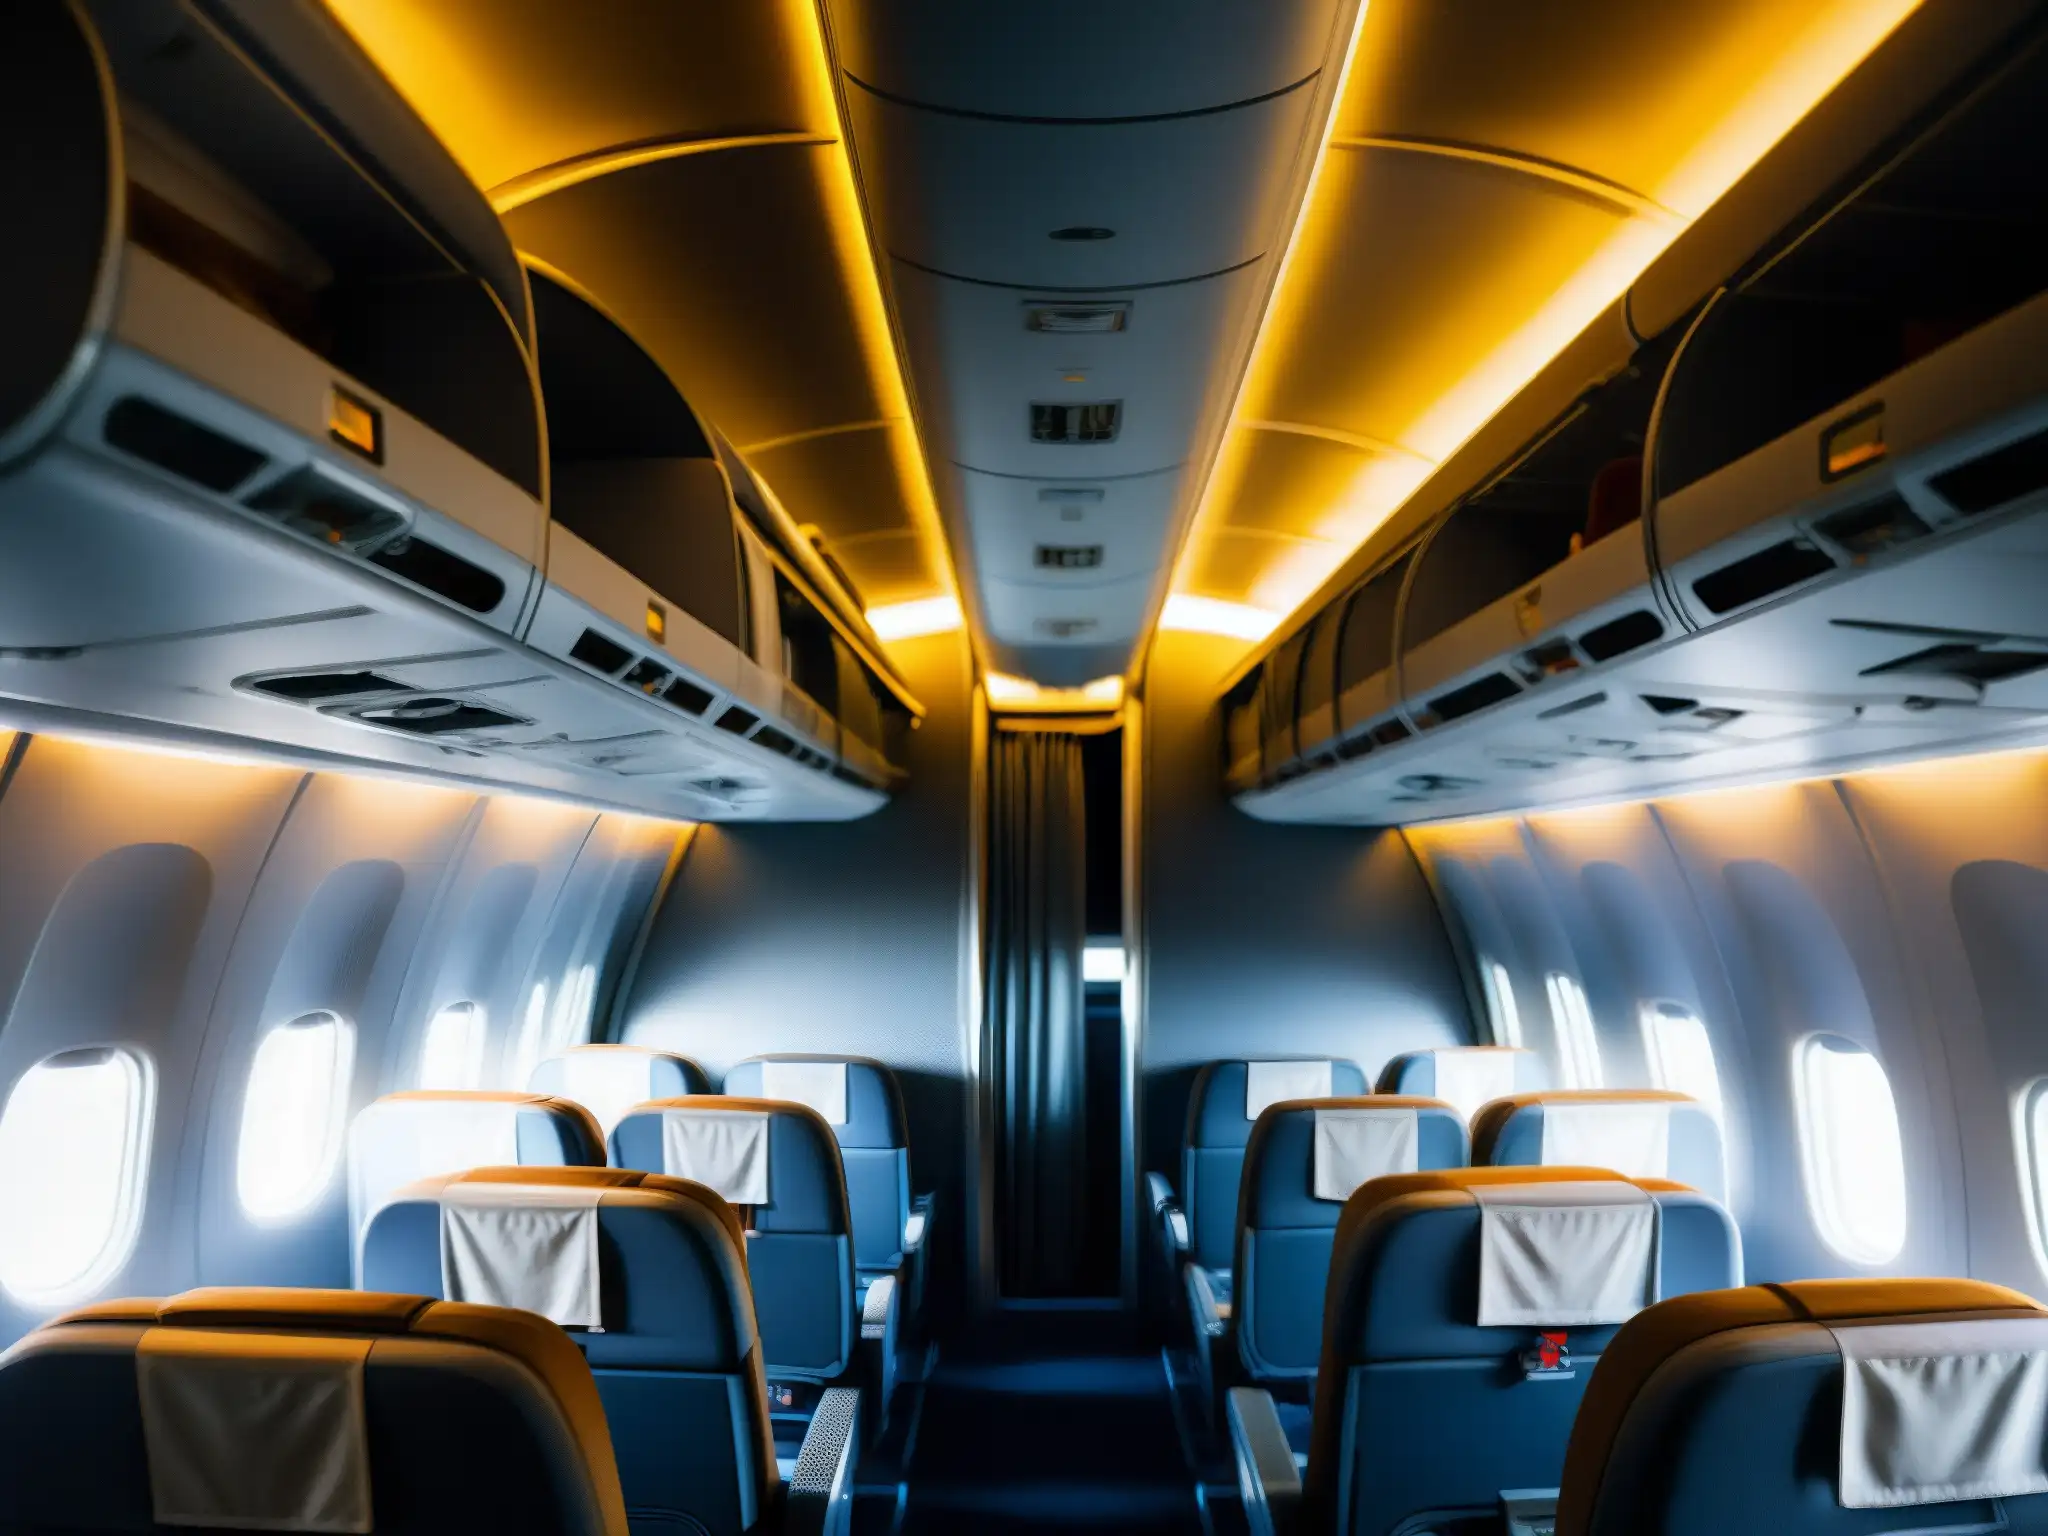 Interior misterioso de avión vacío, iluminado débilmente, evocando la incertidumbre del misterio del vuelo 814